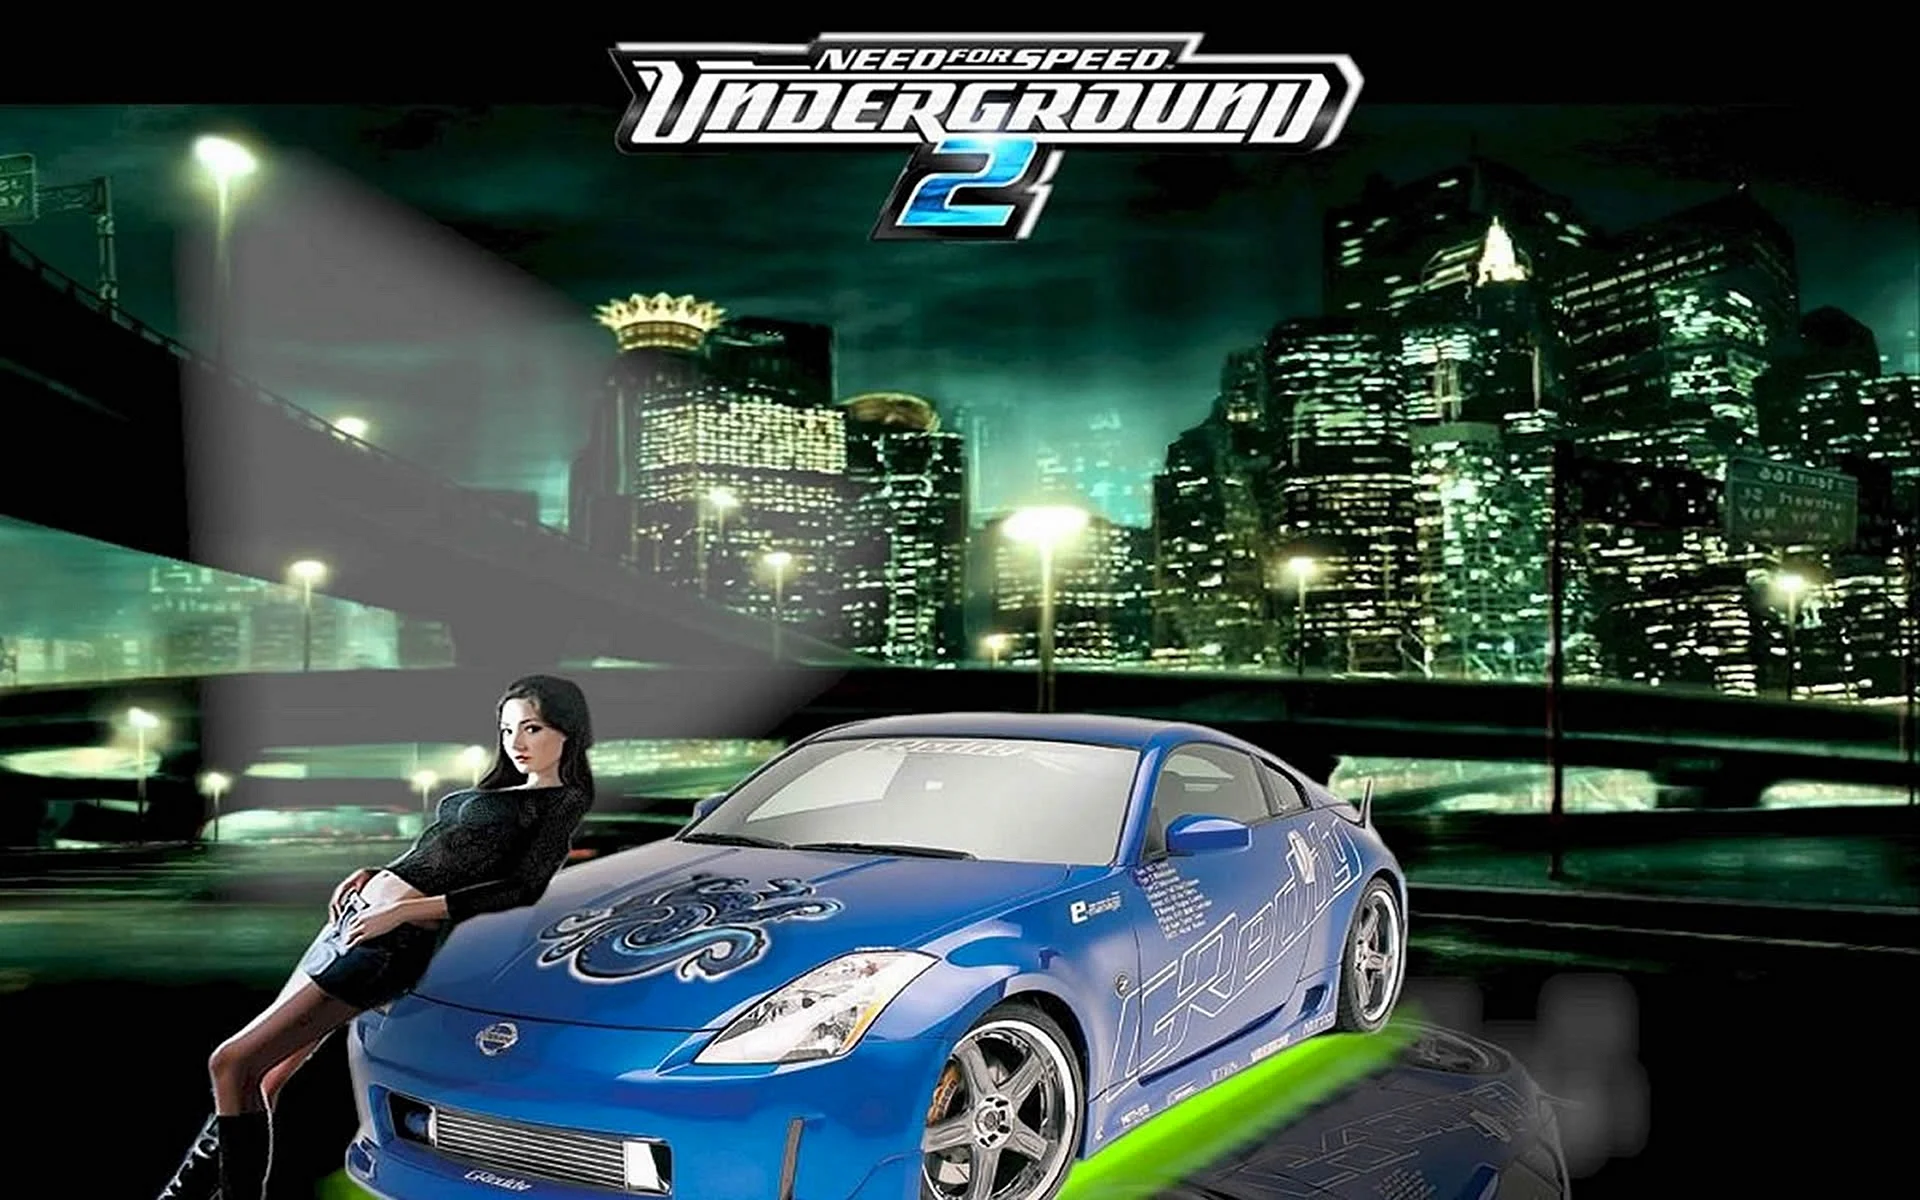 Песни из игры недфорспид. Need for Speed андеграунд 1. Недфорспид Underground 2. Need for Speed Underground 2 Постер. Need for Speed Underground 2 обои.